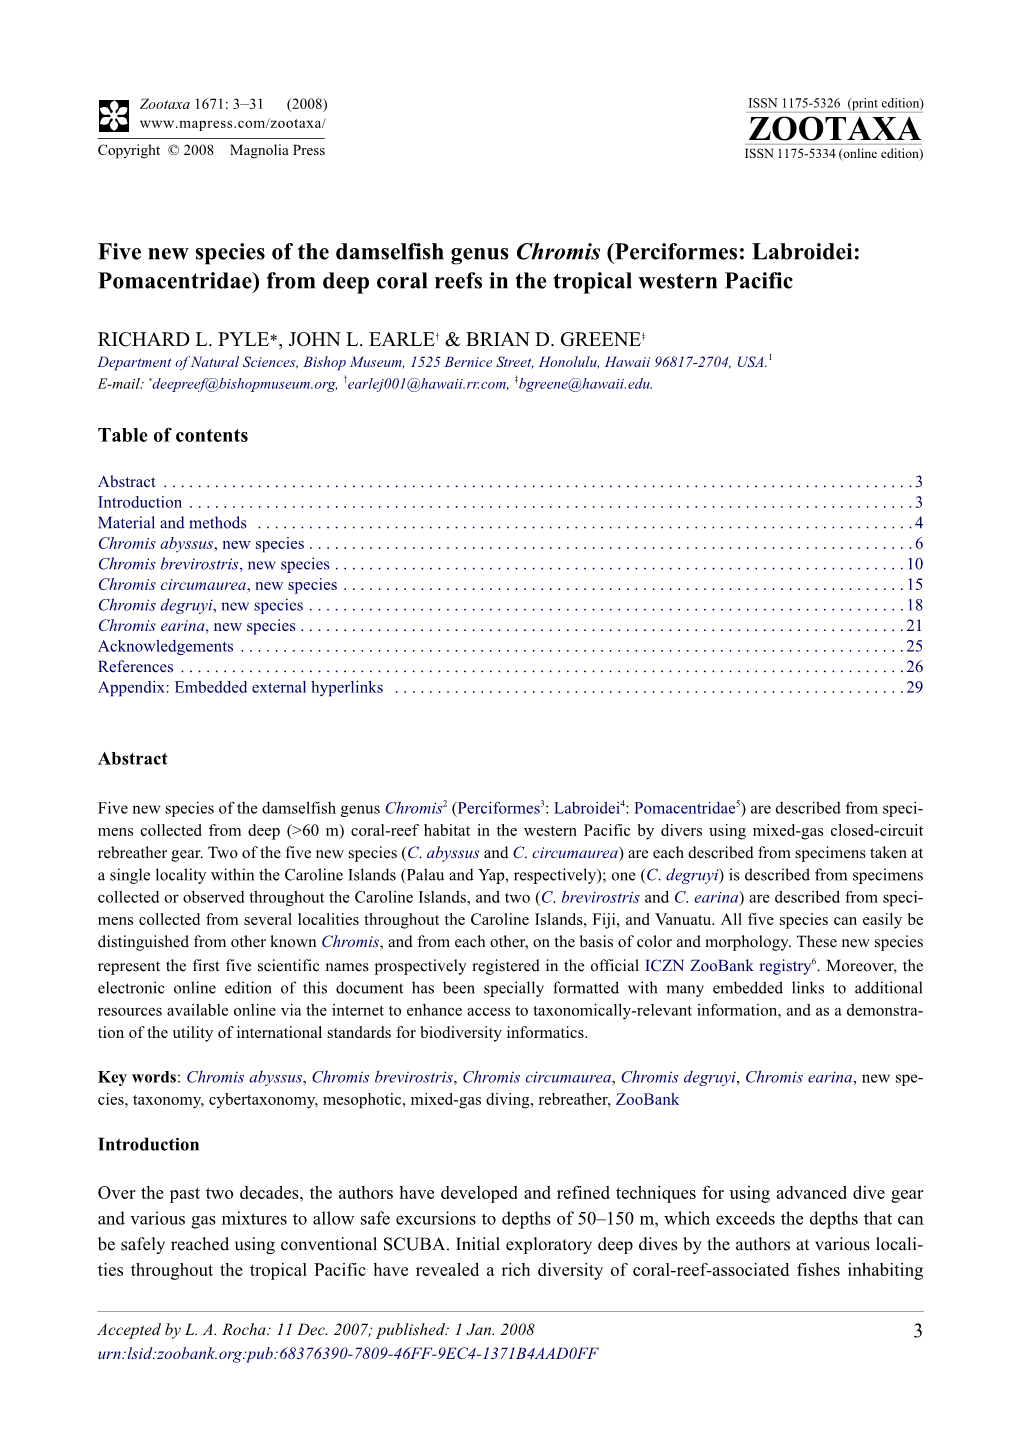 Zootaxa Pisces: Five New Species of the Damselfish Genus Chromis